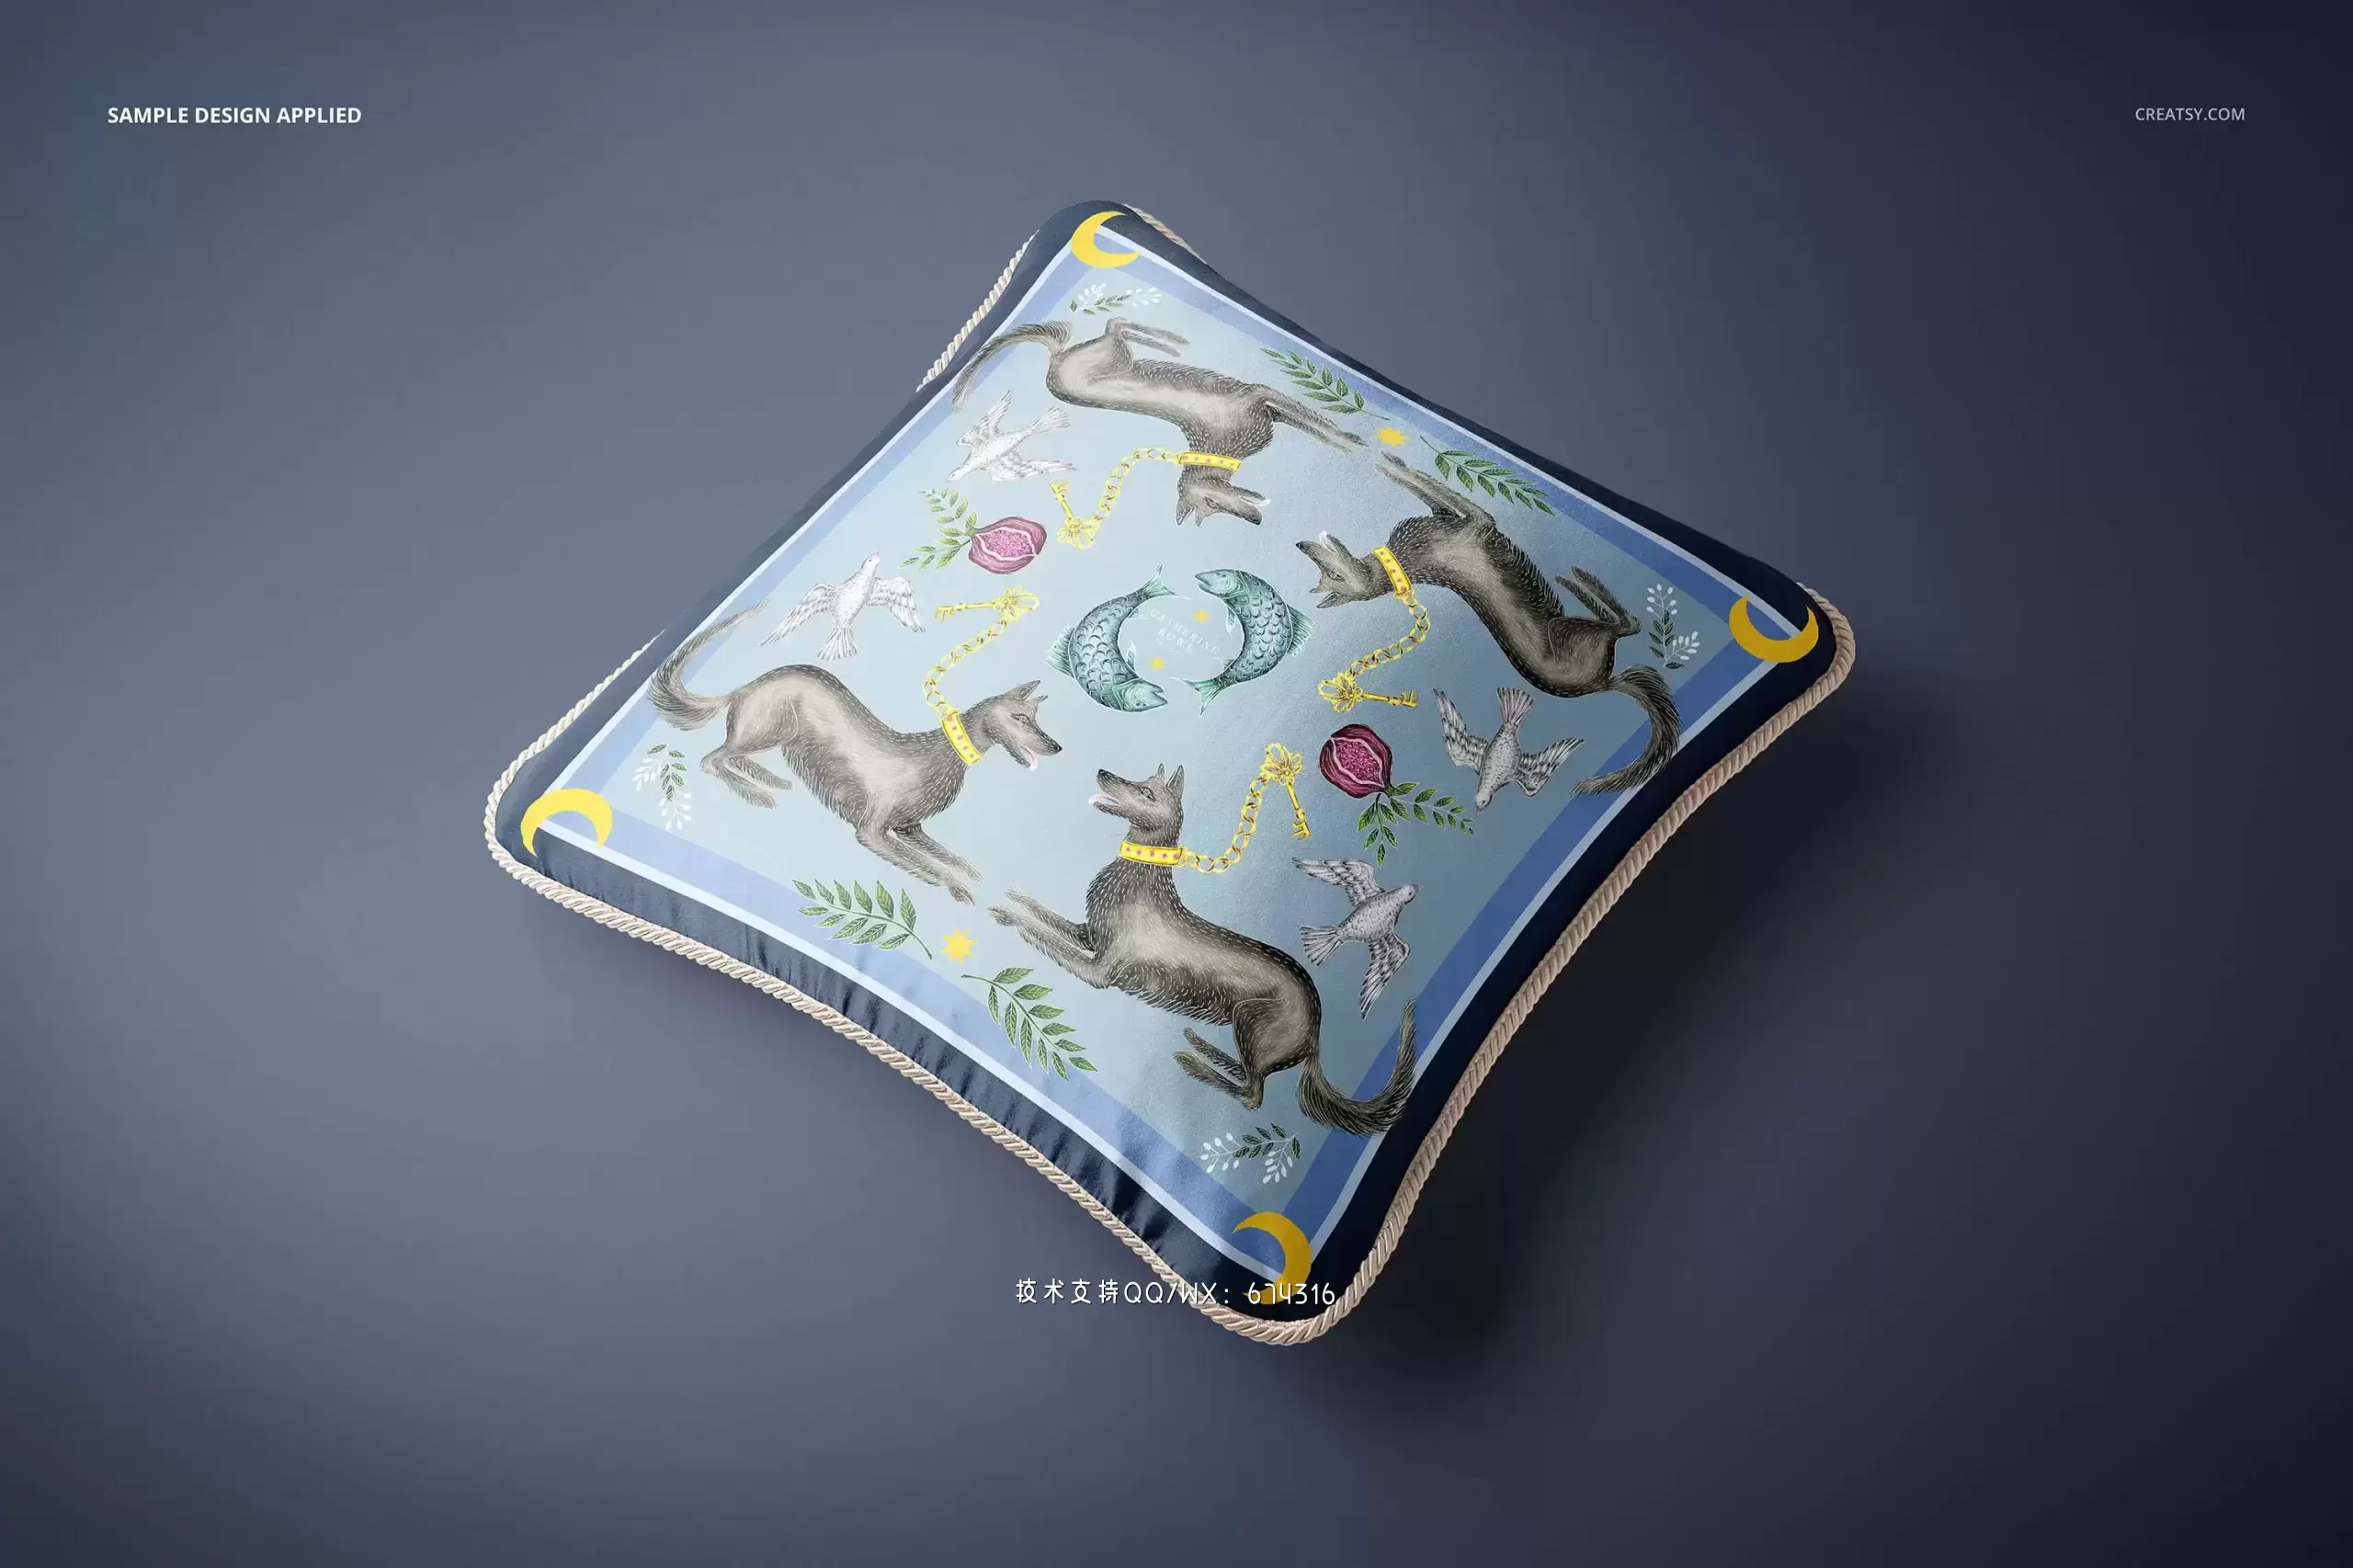 真丝编织套垫图案设计枕头样机[3.98GB,PSD]免费下载插图8